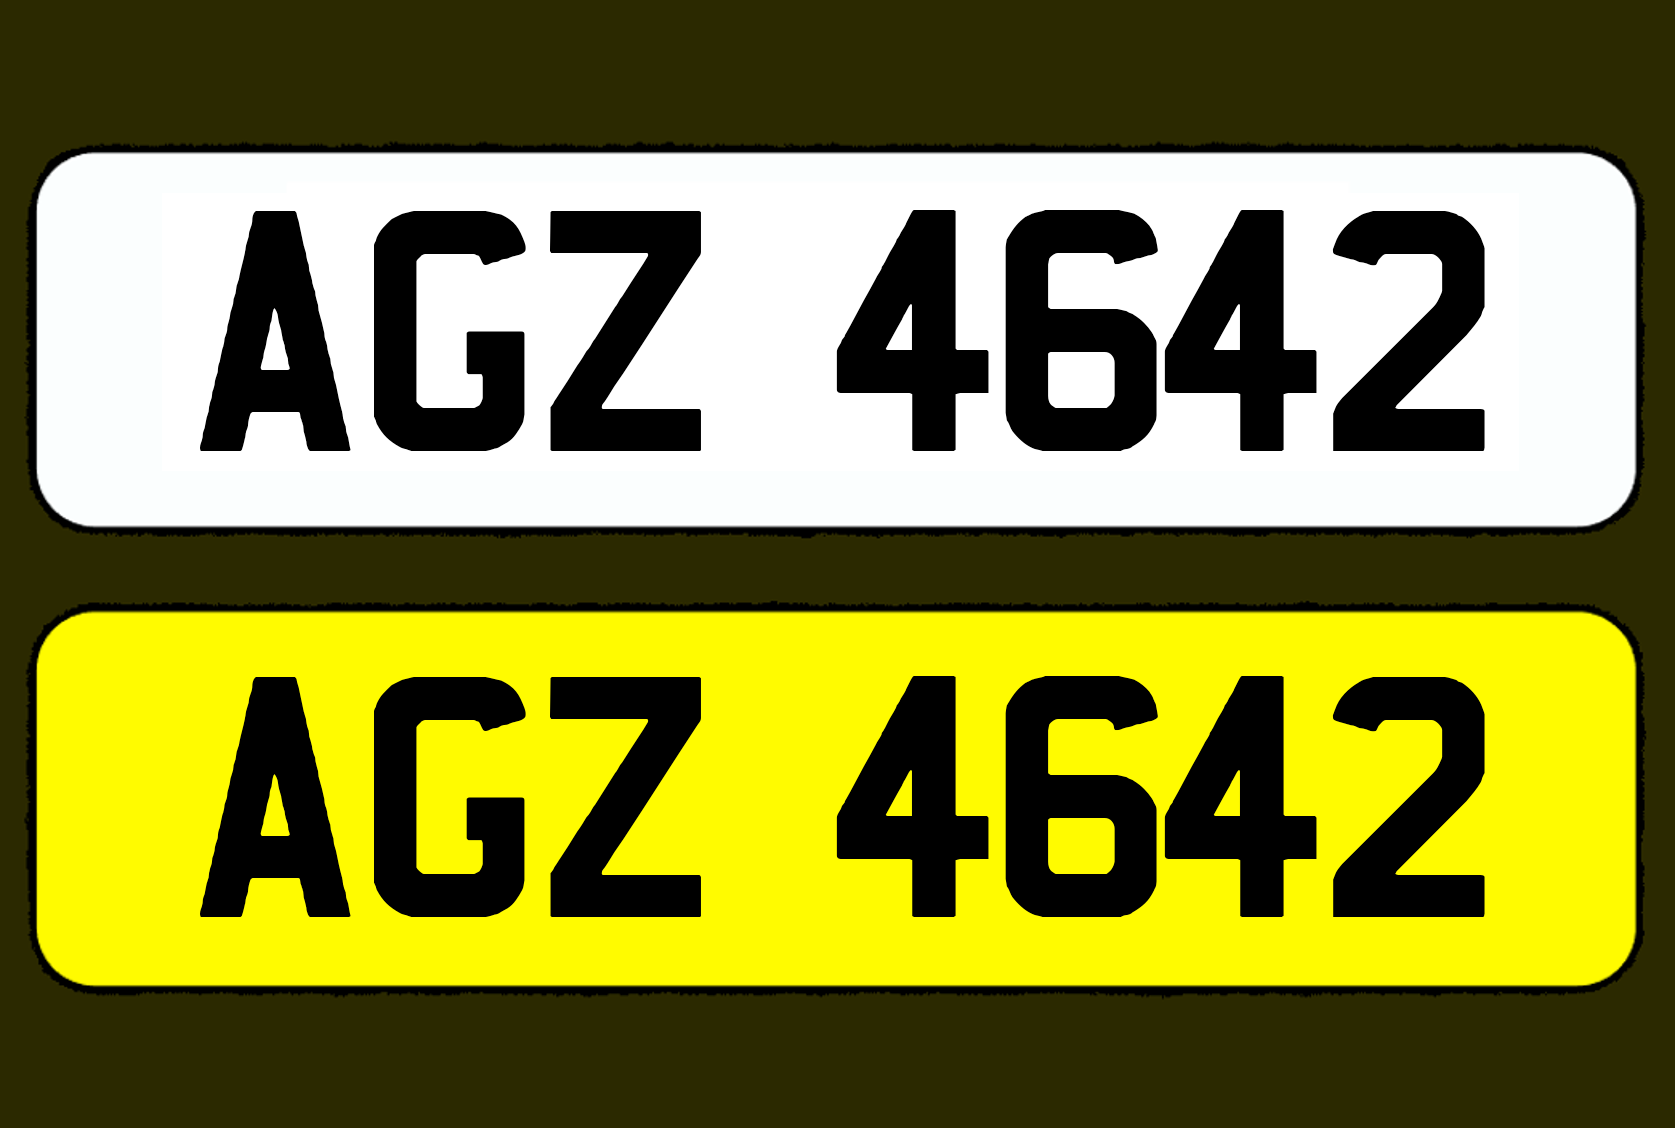 AGZ 4642